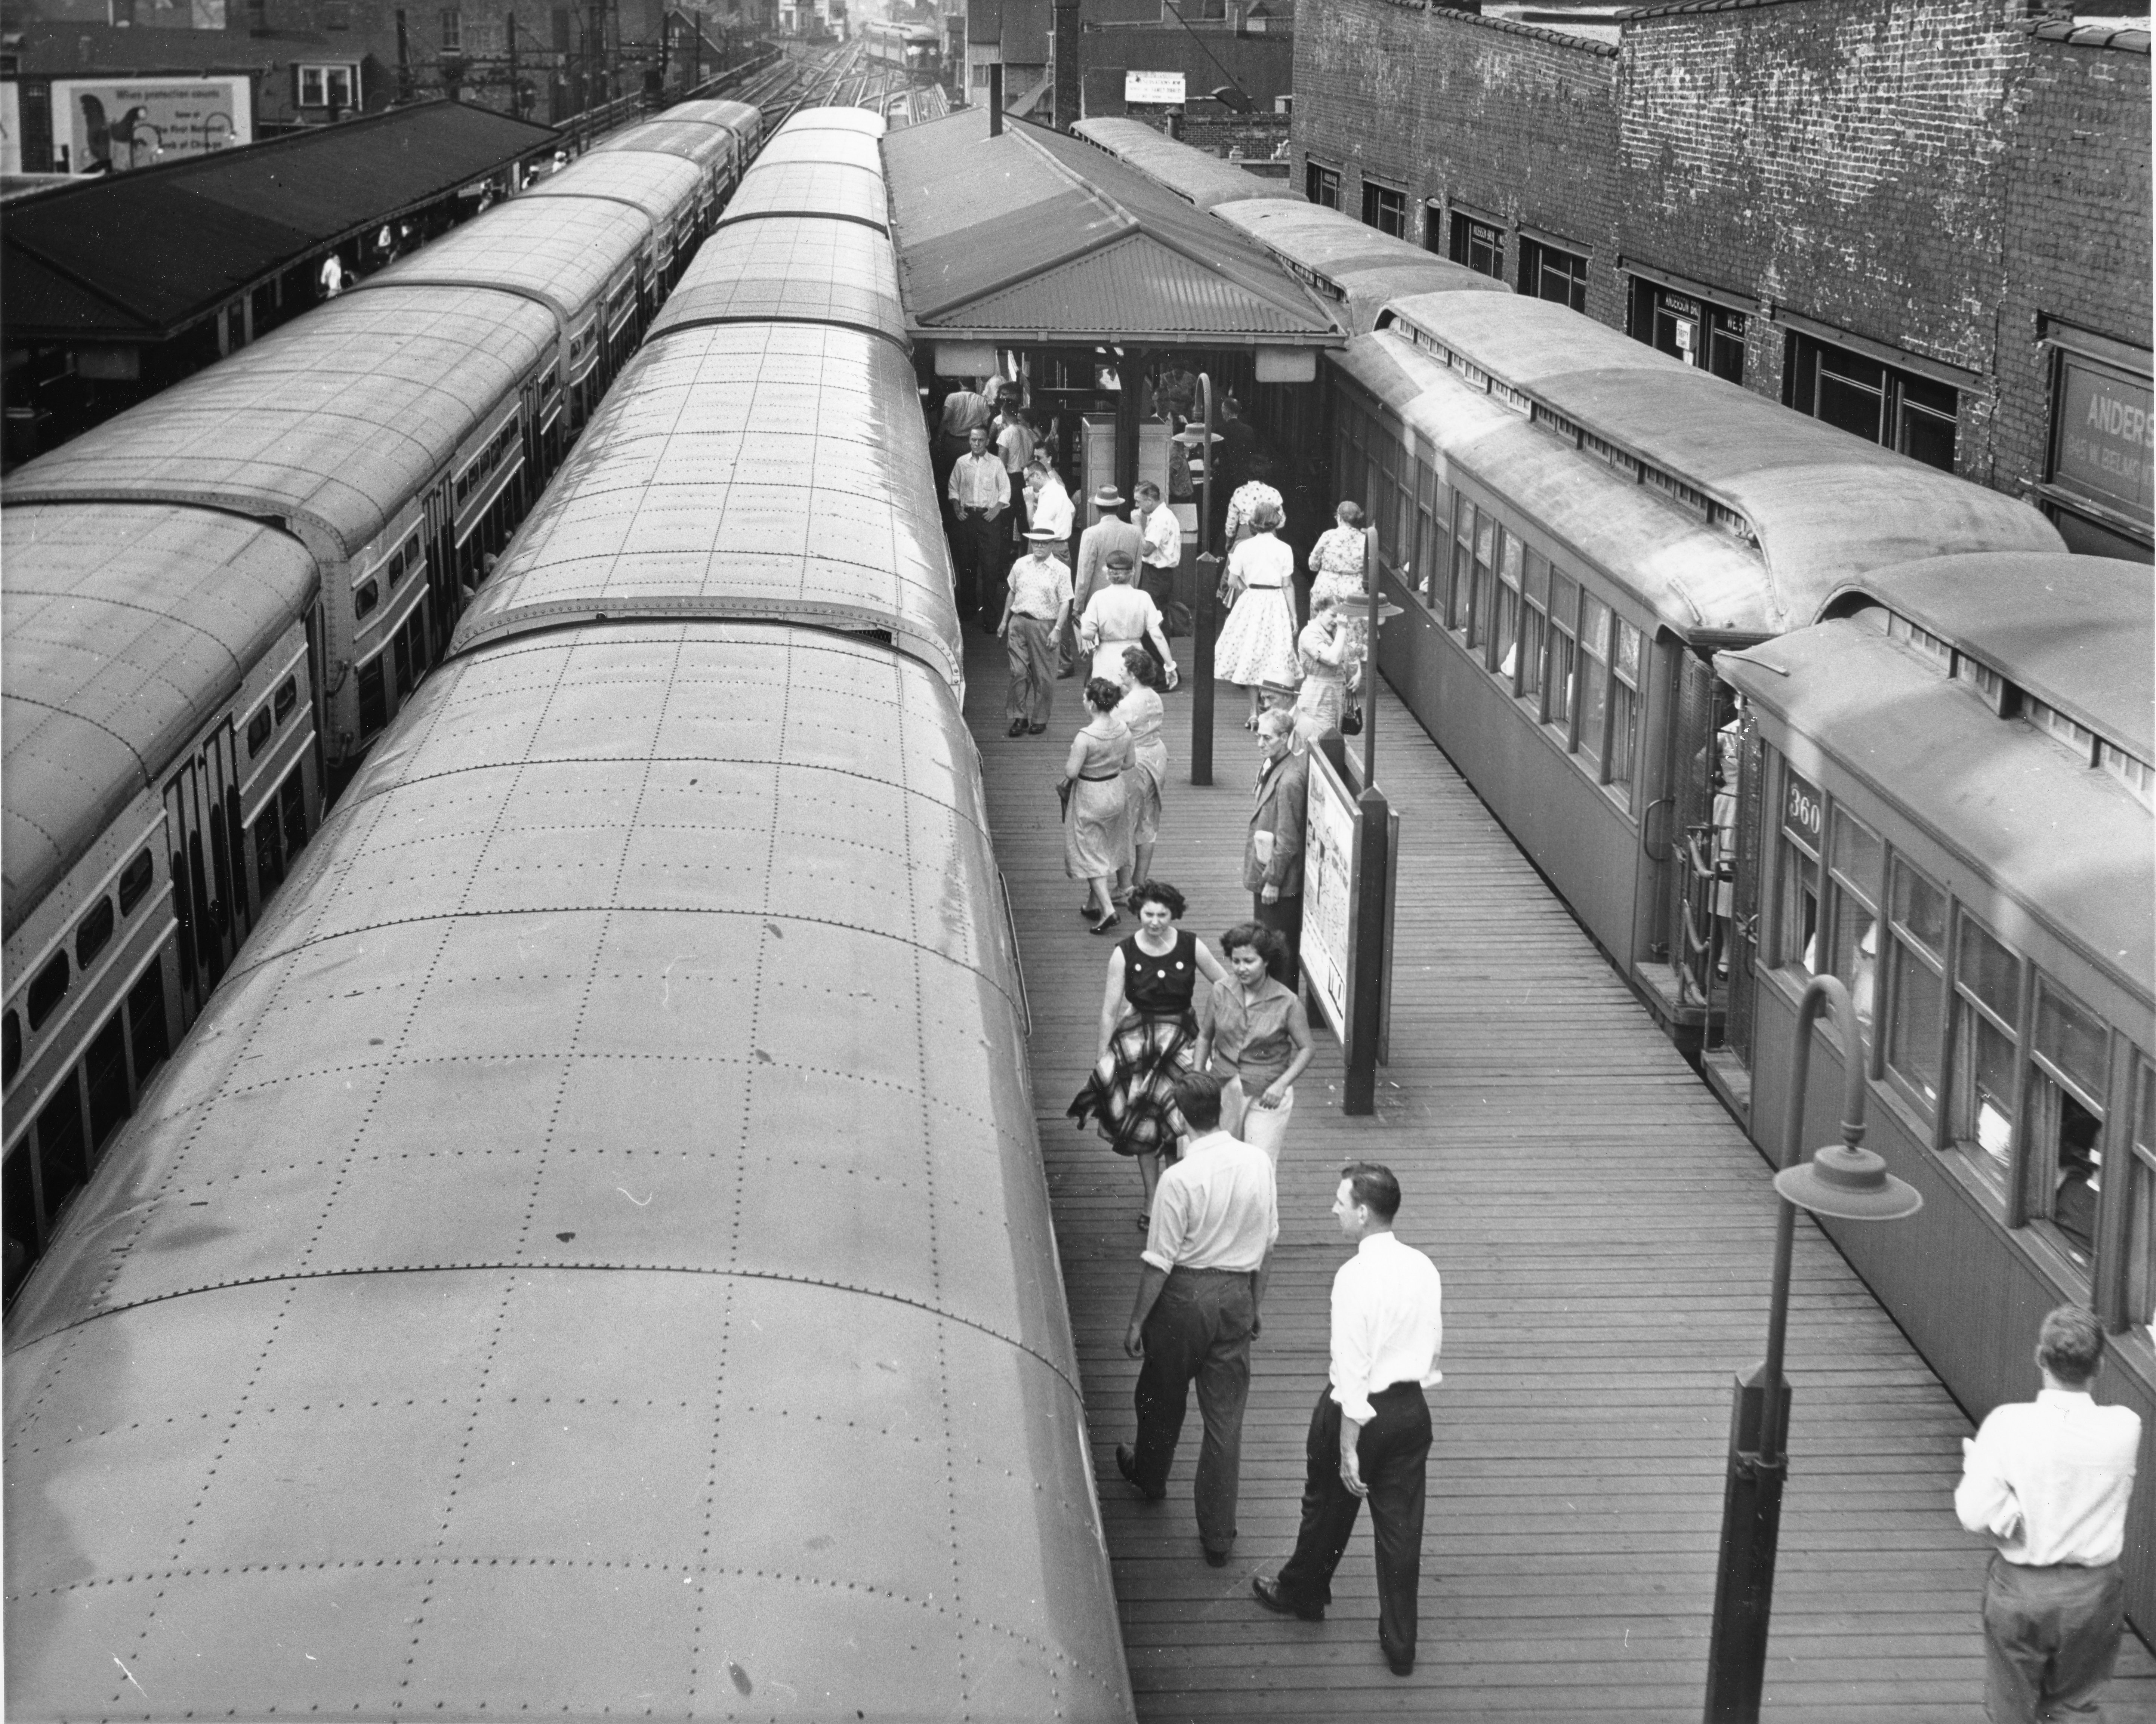 1956 transit